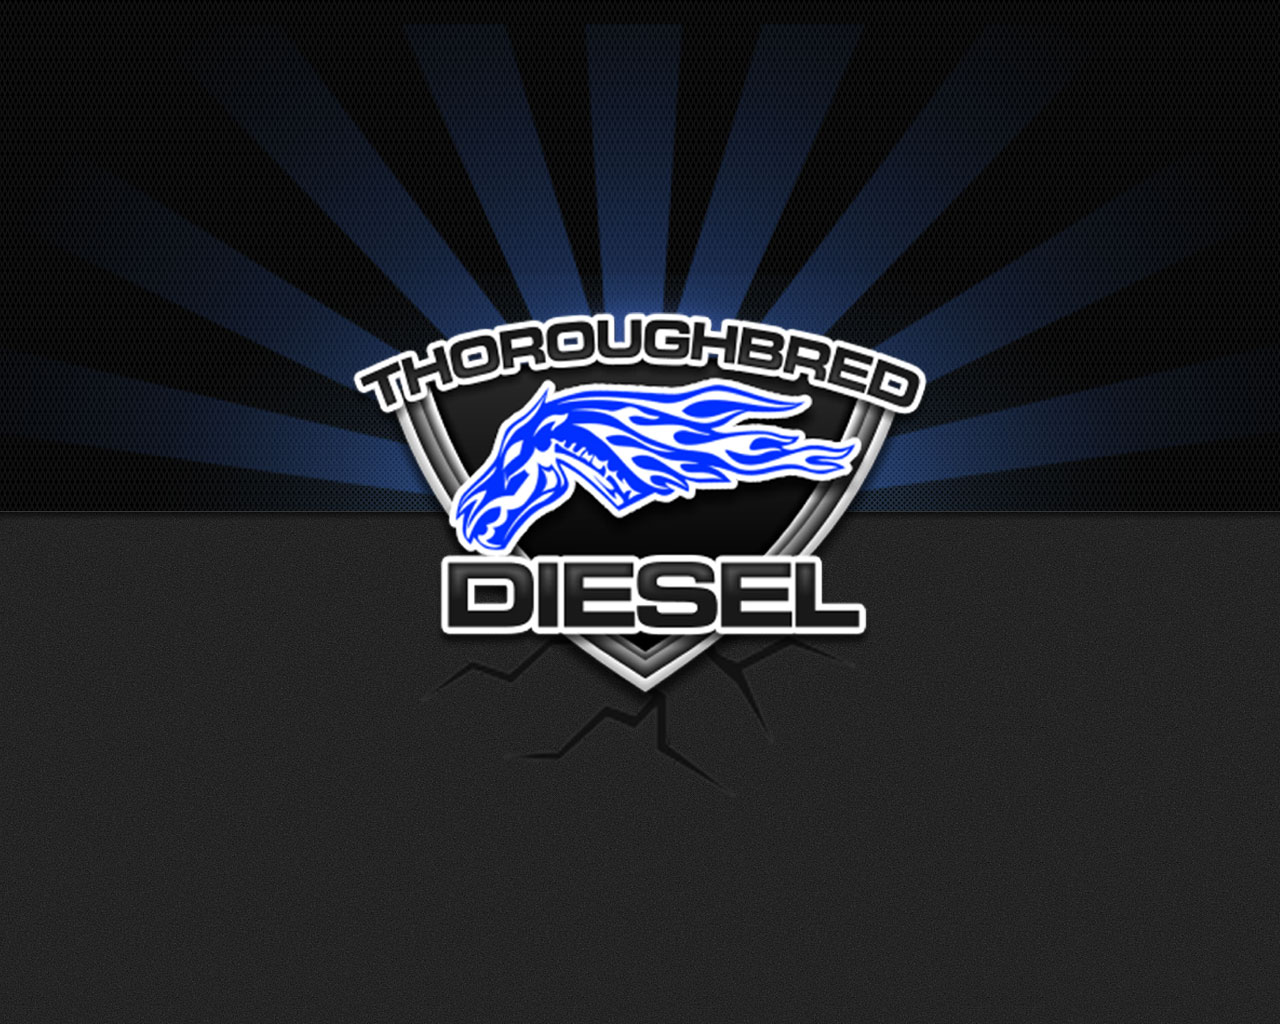 Логотип дизель. Эмблема дизель. Фирма дизель. Логотип компании дизель. Заставка Diesel.